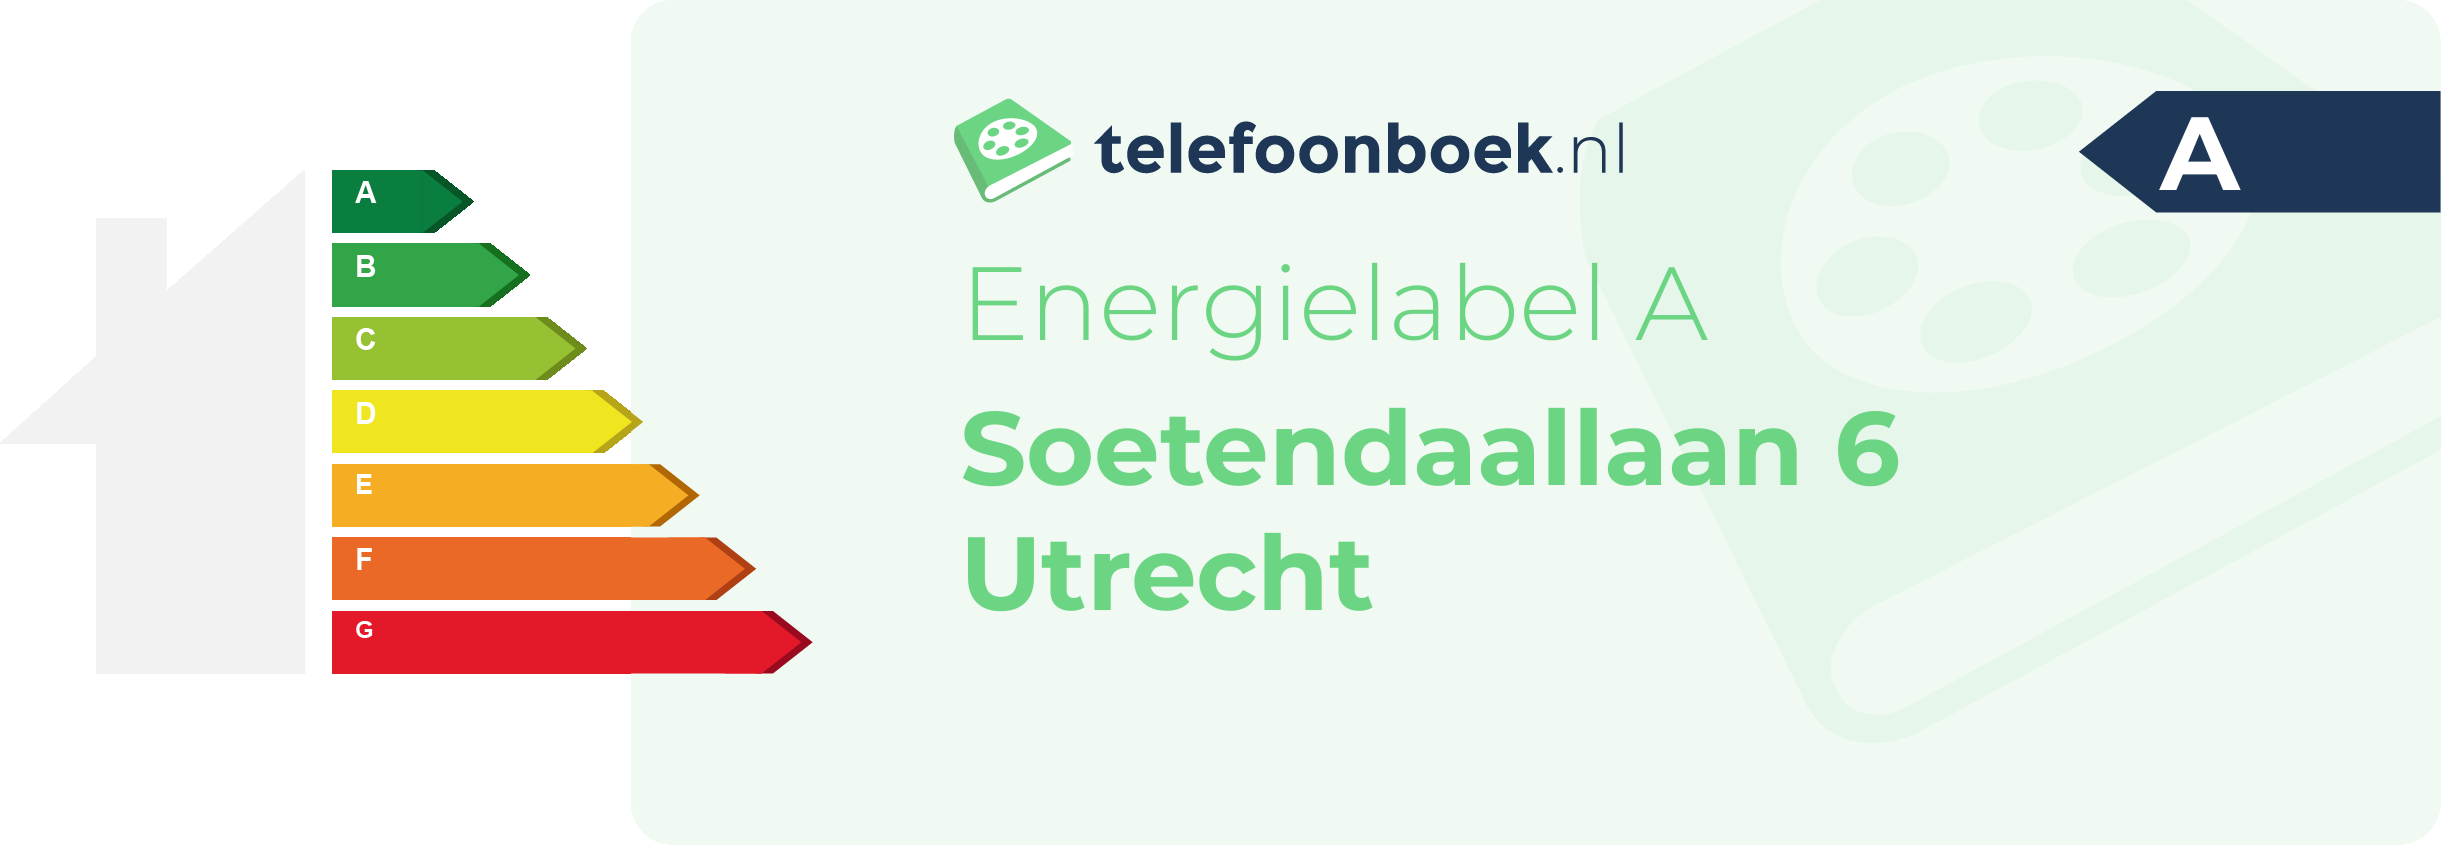 Energielabel Soetendaallaan 6 Utrecht